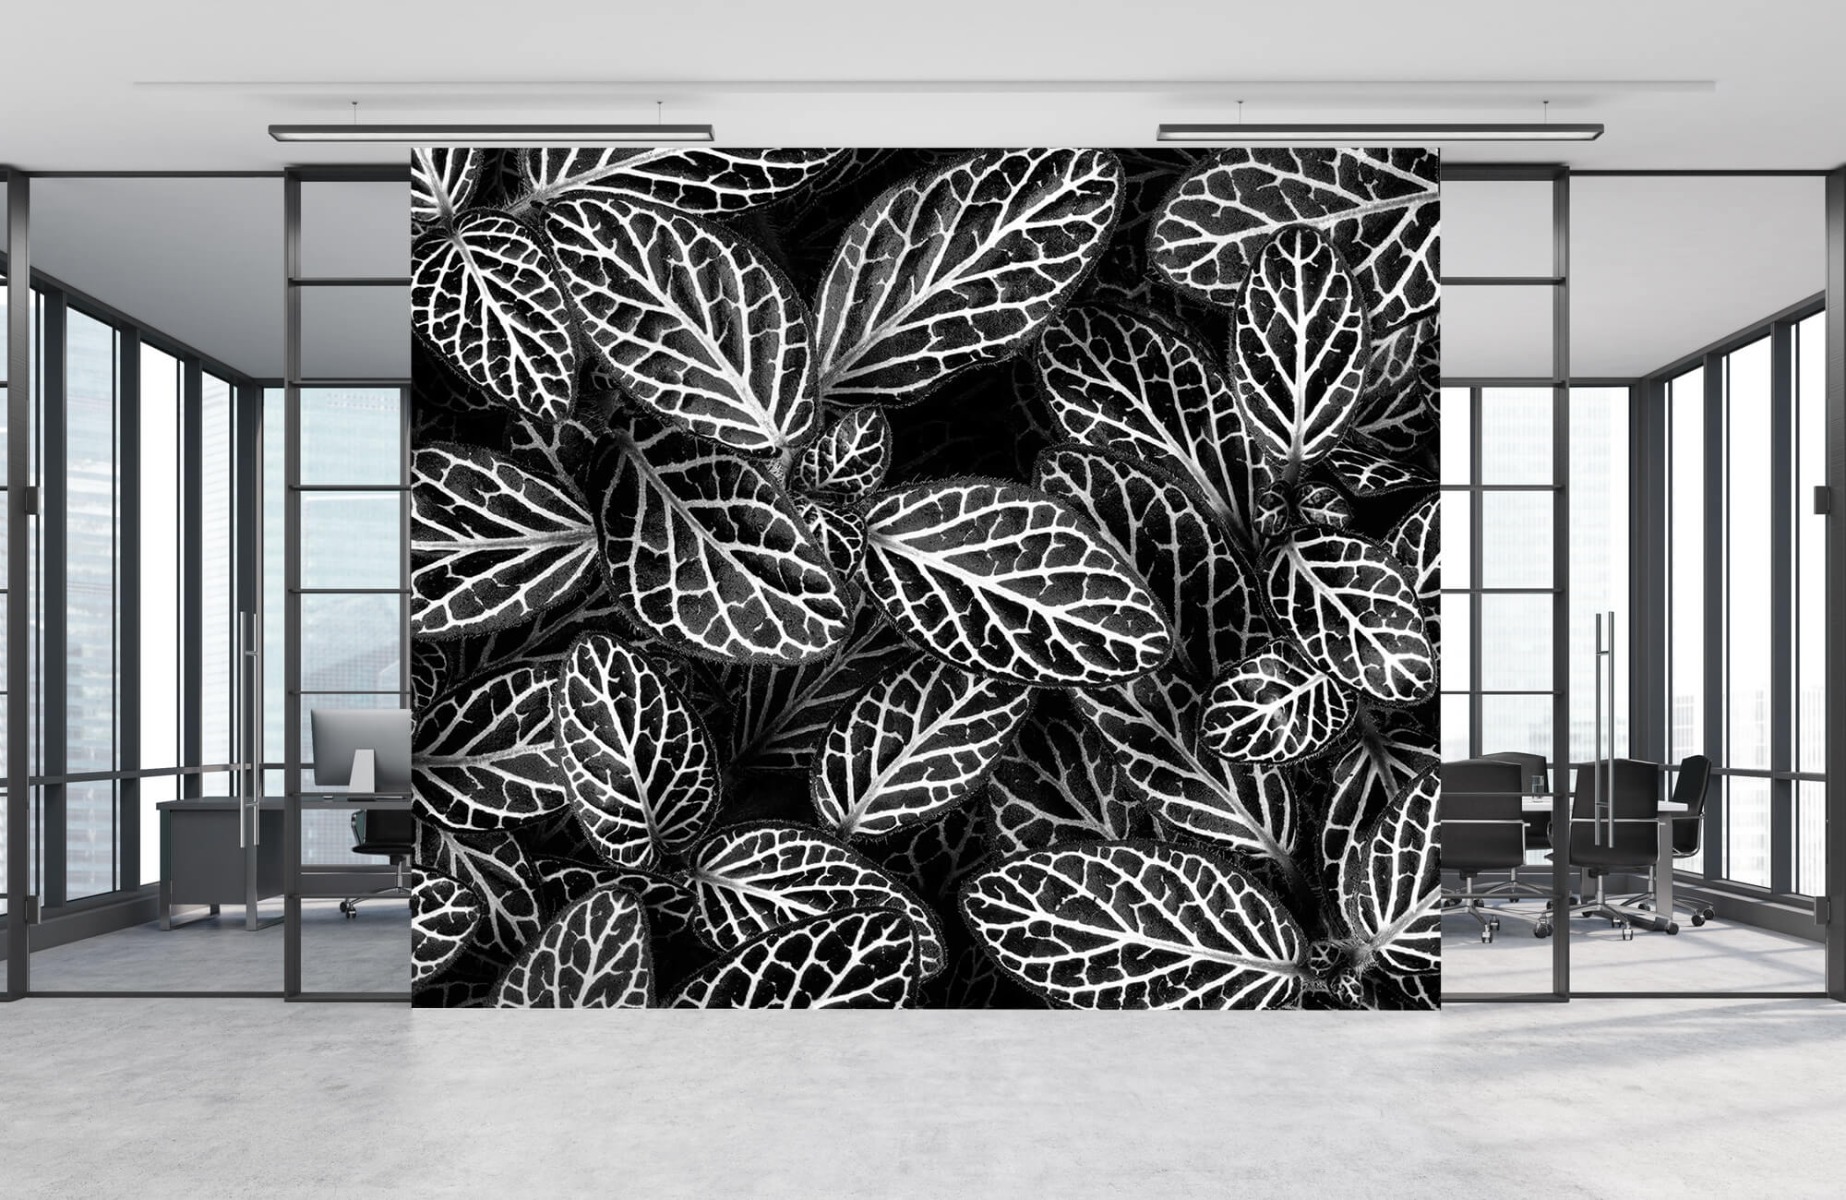 Blanco y negro - Papel pintado con Fittonia - Sala de reuniones 7